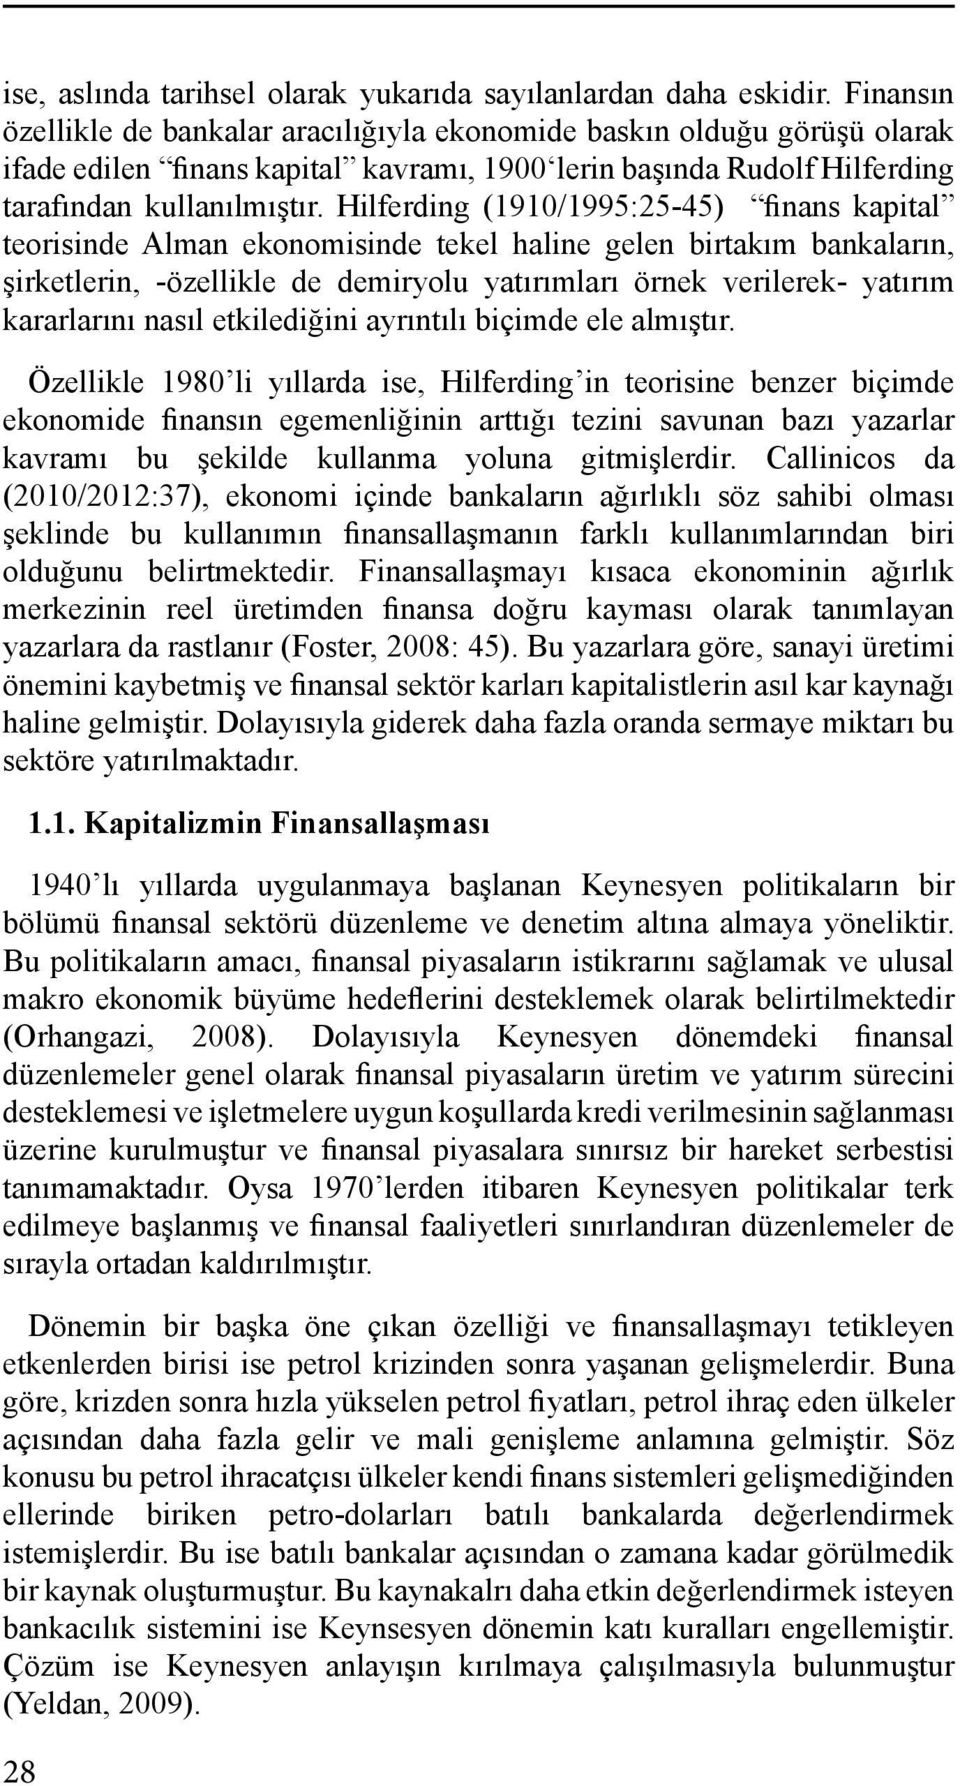 Hilferding (1910/1995:25-45) finans kapital teorisinde Alman ekonomisinde tekel haline gelen birtakım bankaların, şirketlerin, -özellikle de demiryolu yatırımları örnek verilerek- yatırım kararlarını